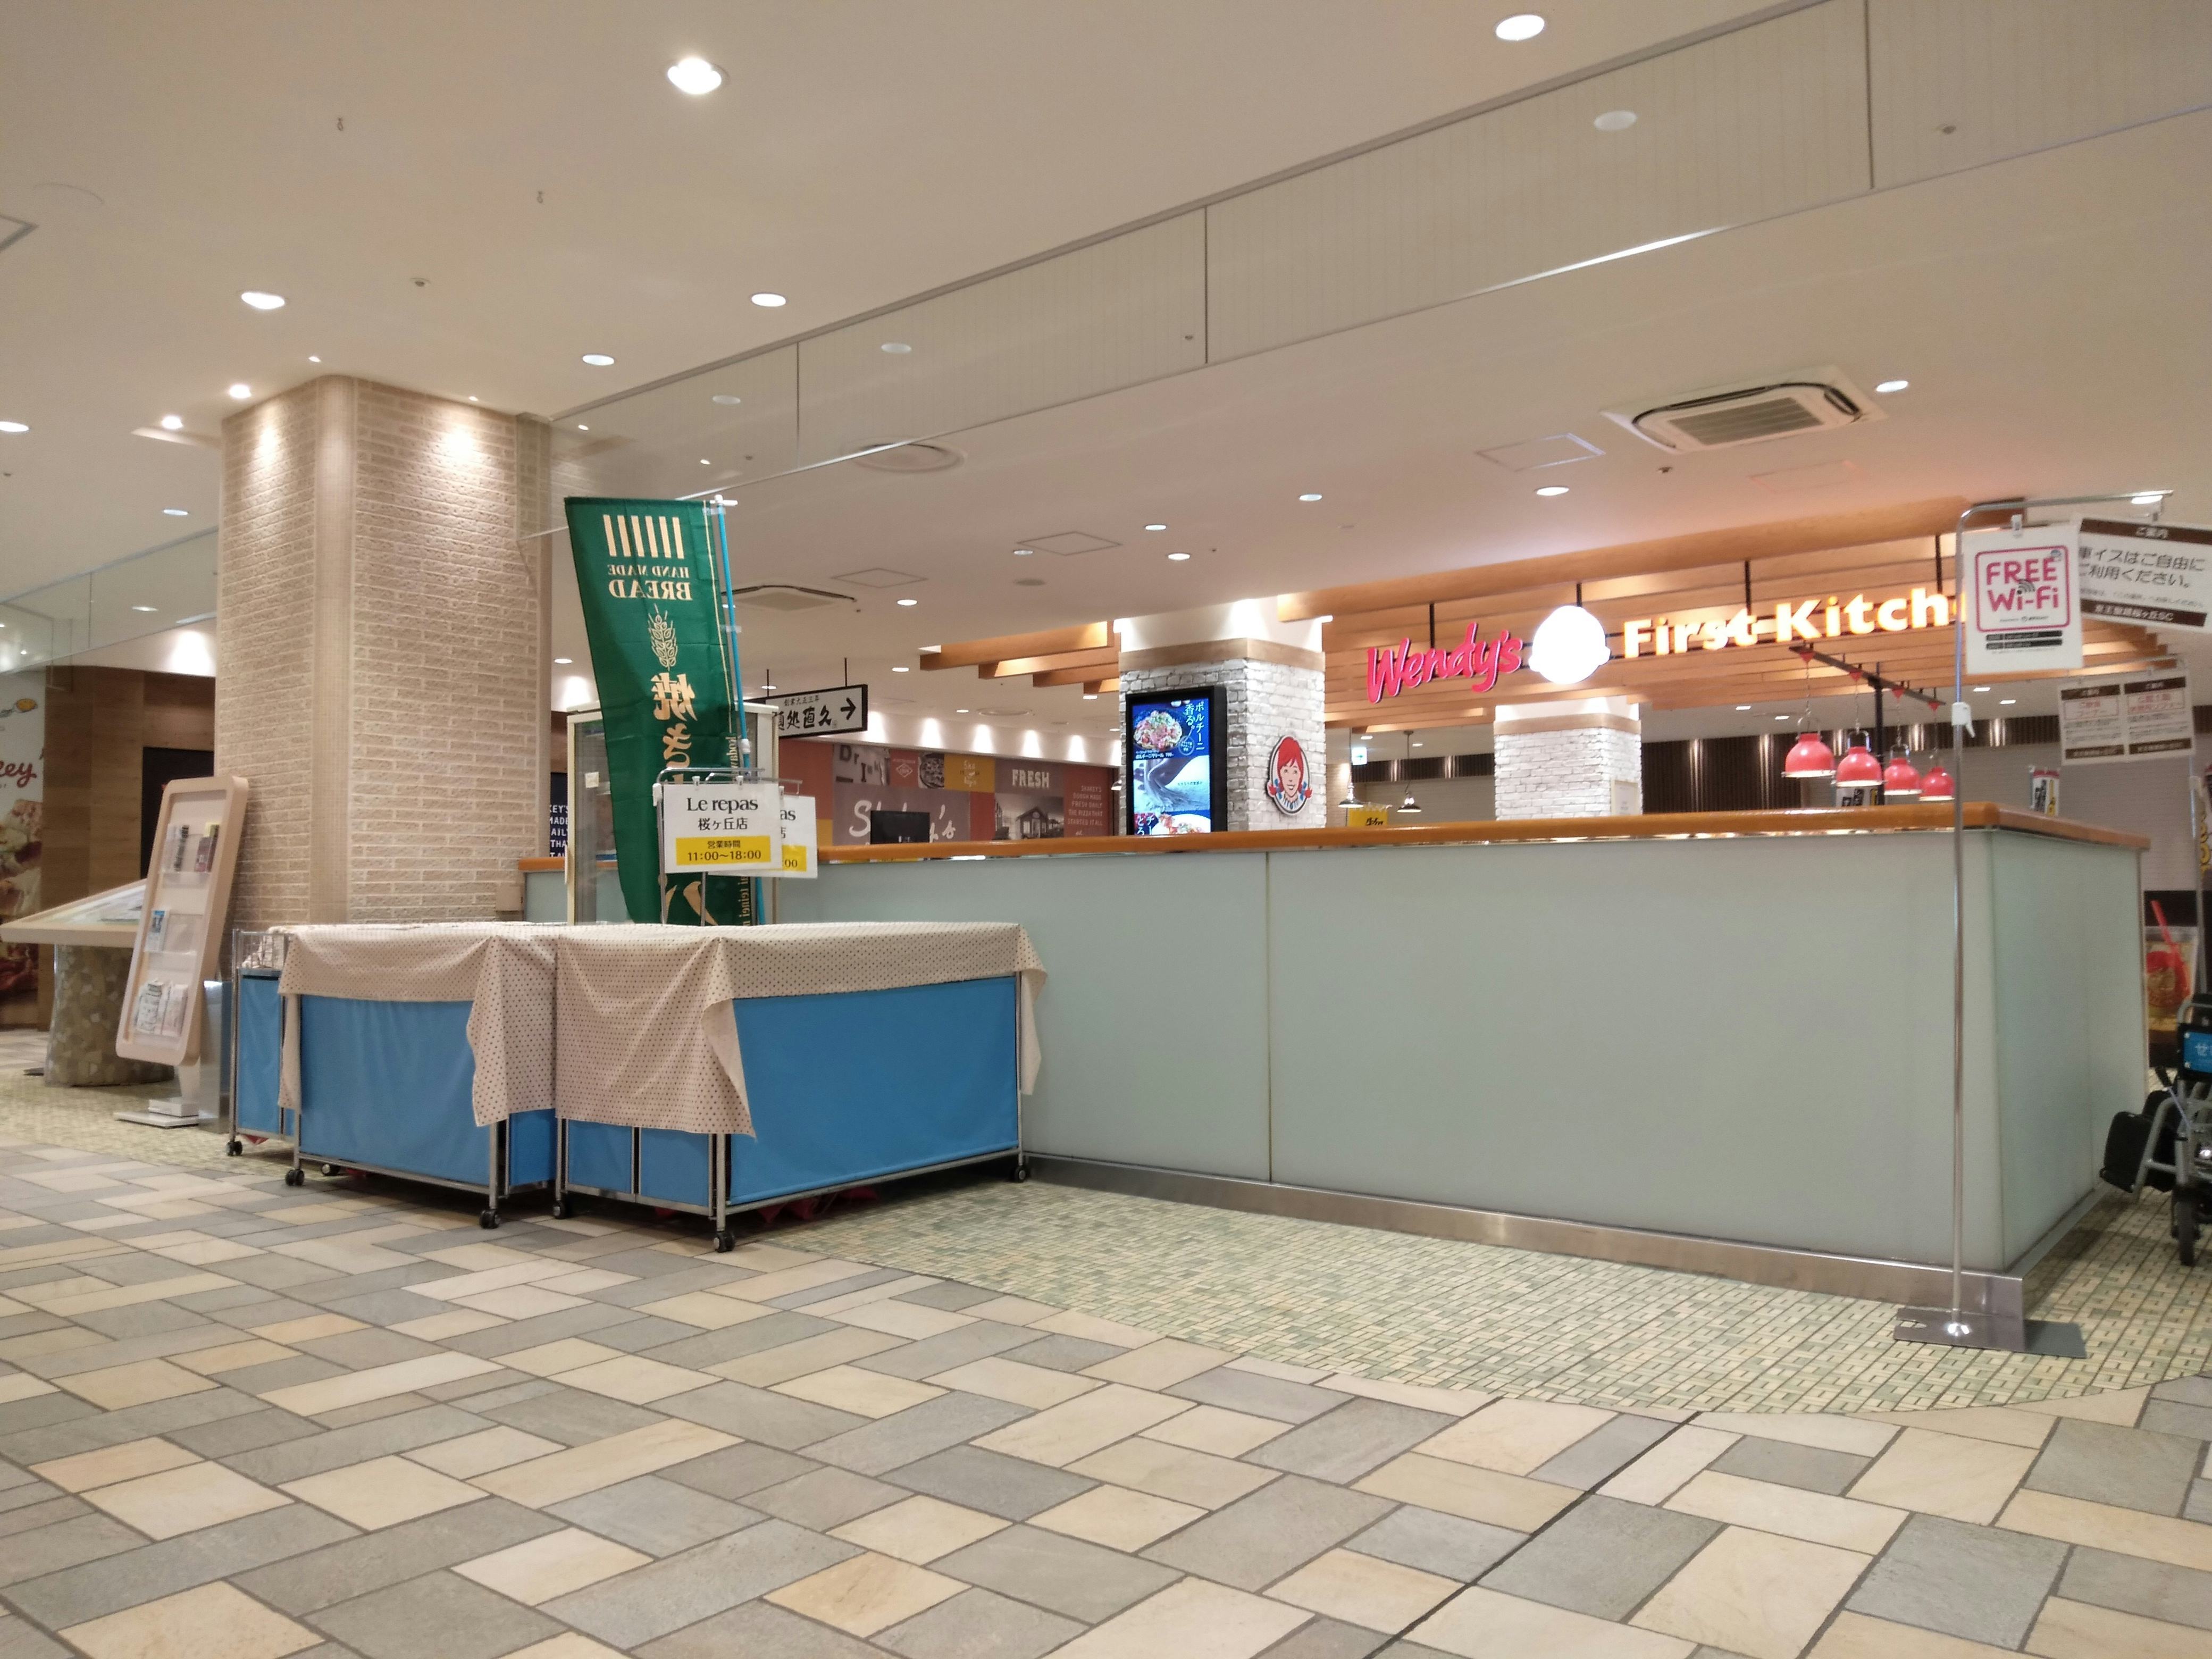 【京王聖蹟桜ヶ丘SC】物販やプロモーションイベントに適したレストラン・カフェフロアイベントスペース